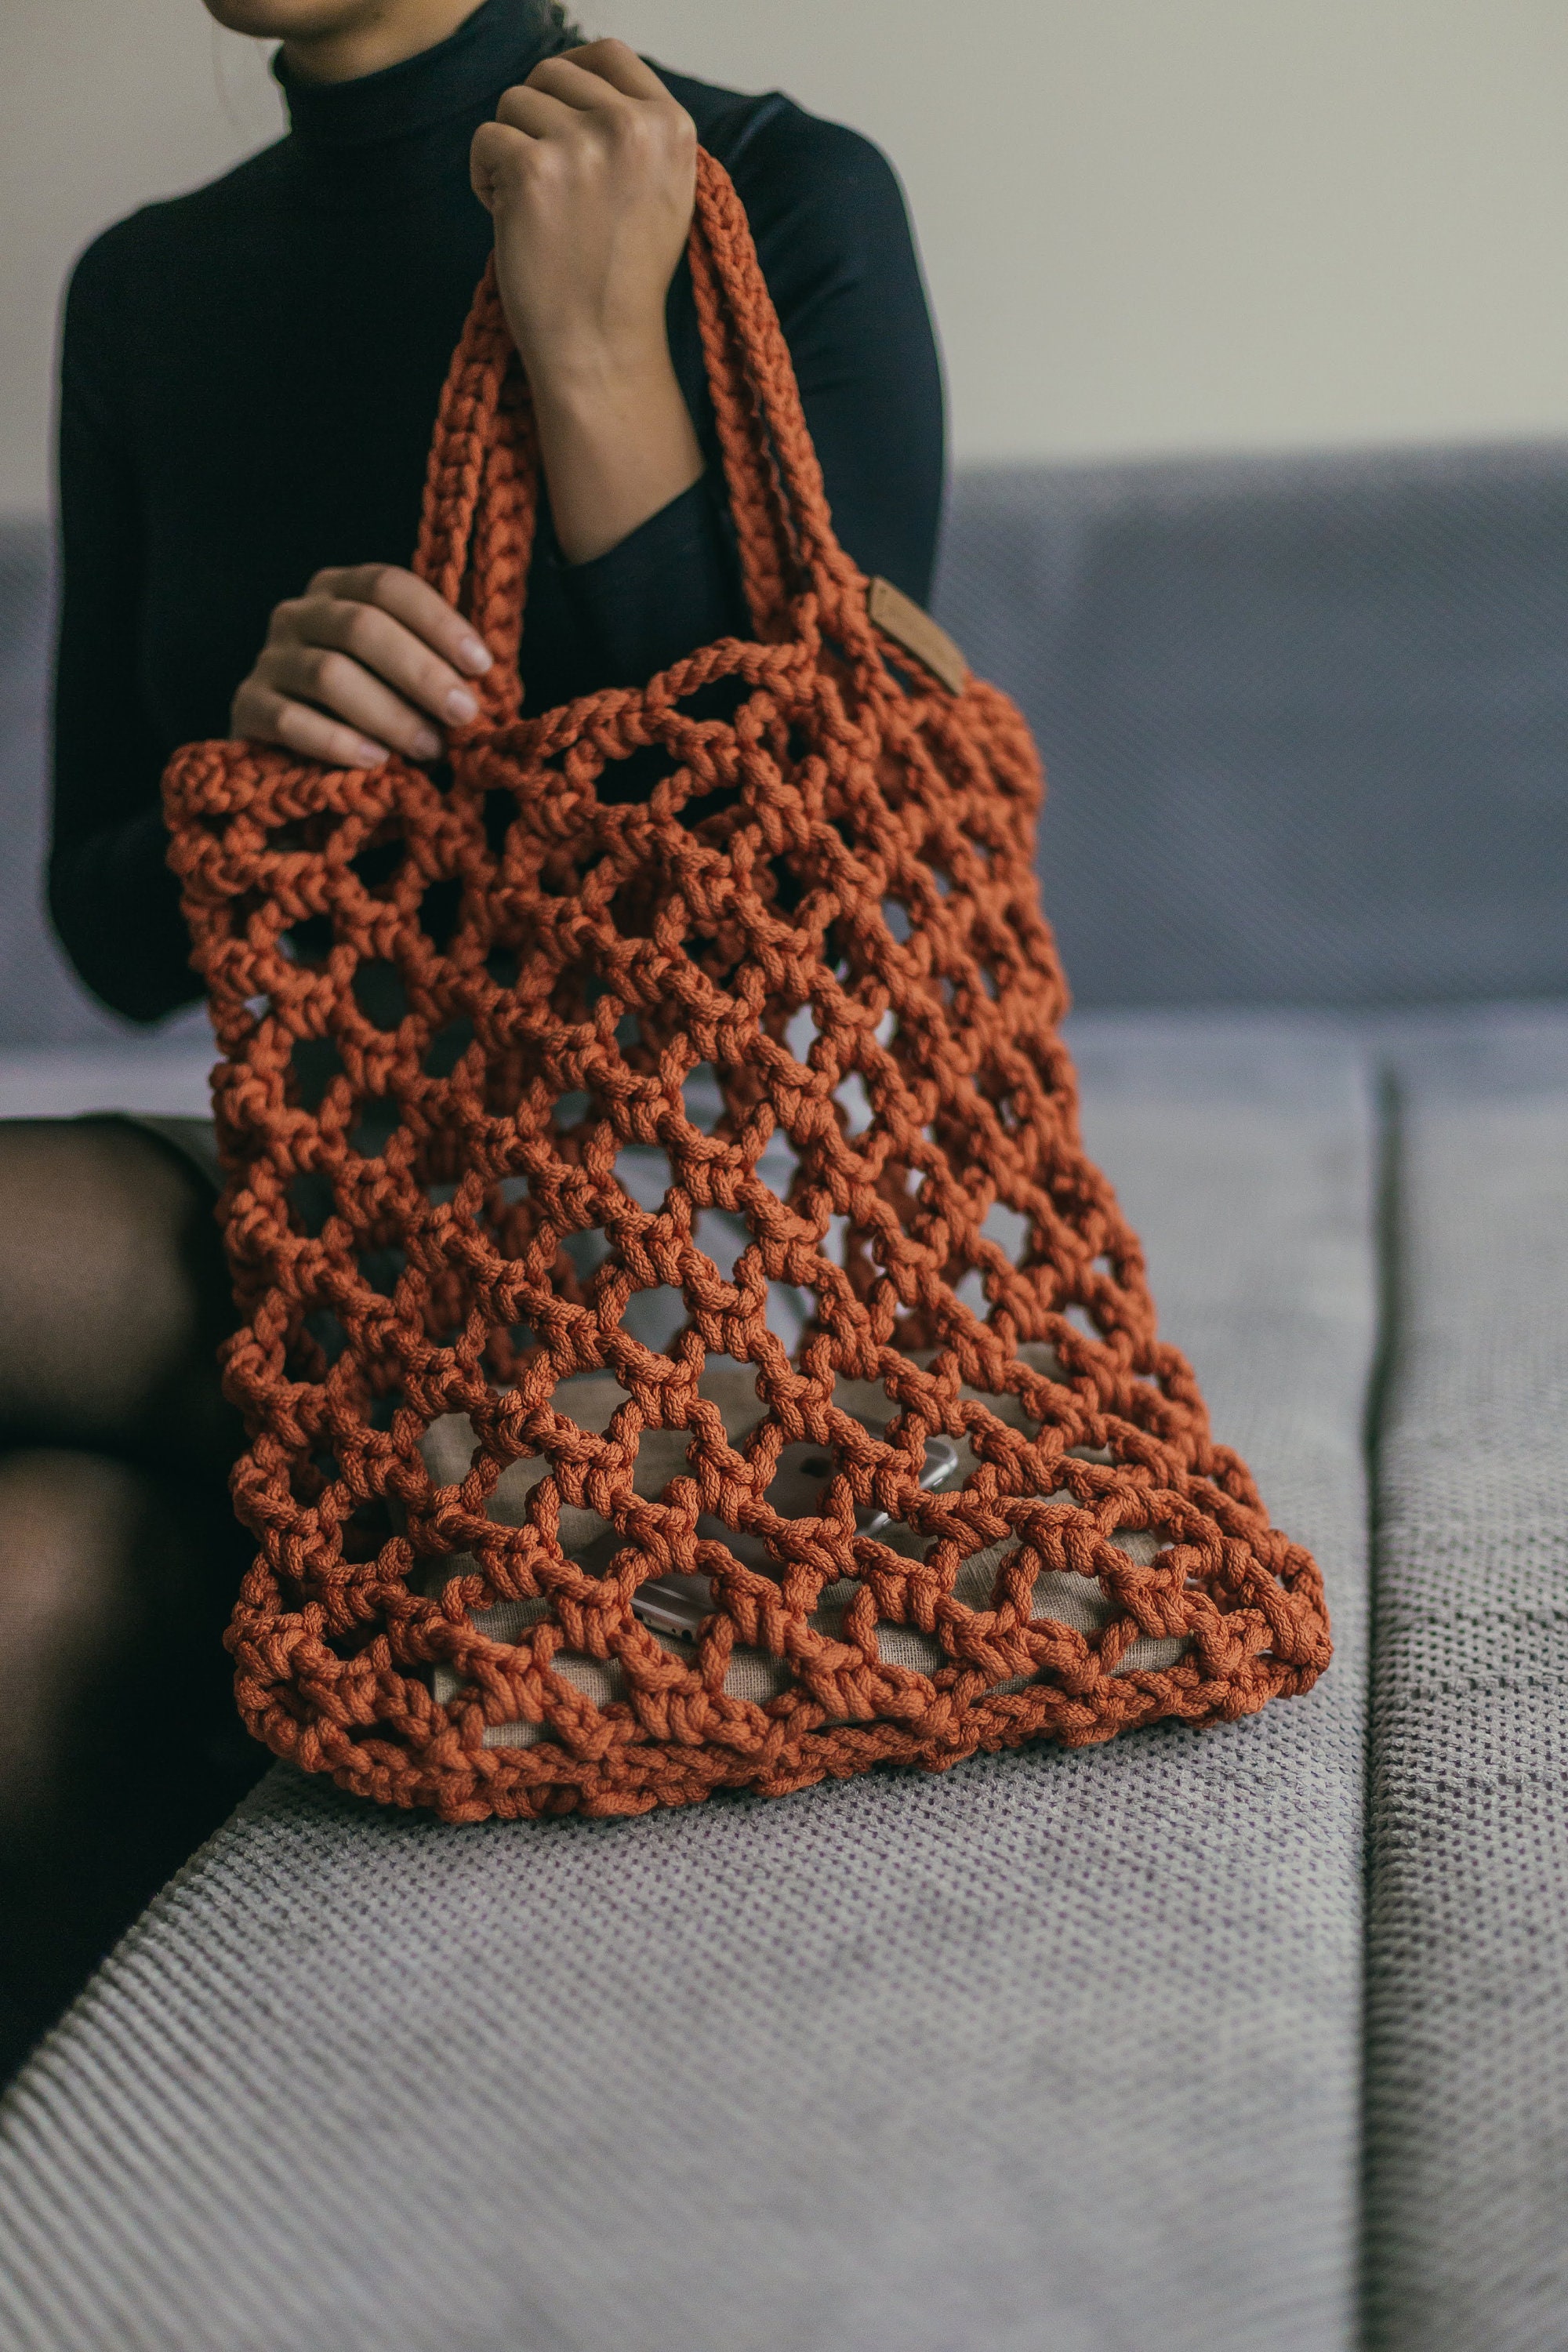 Crochet Bag Kit Crochet Kit Beginner With Yarn Crochet Kit - Etsy